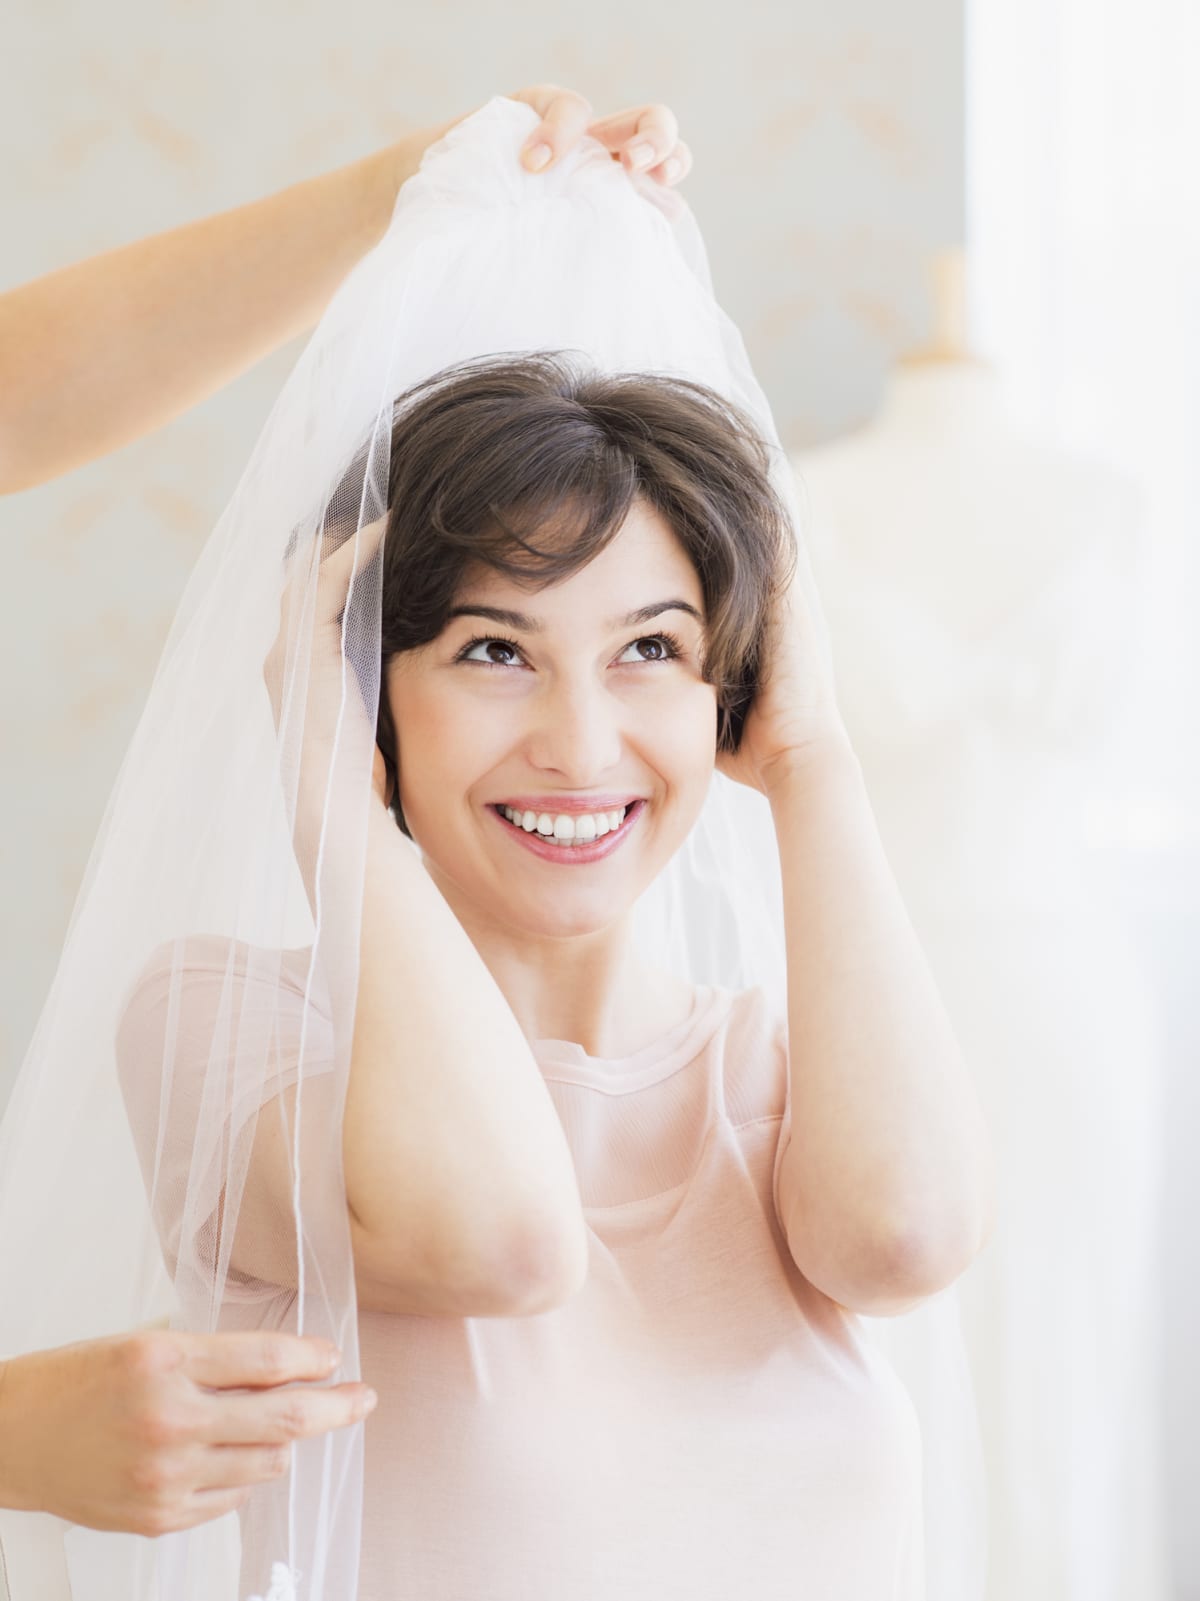 A bride tries on a veil.